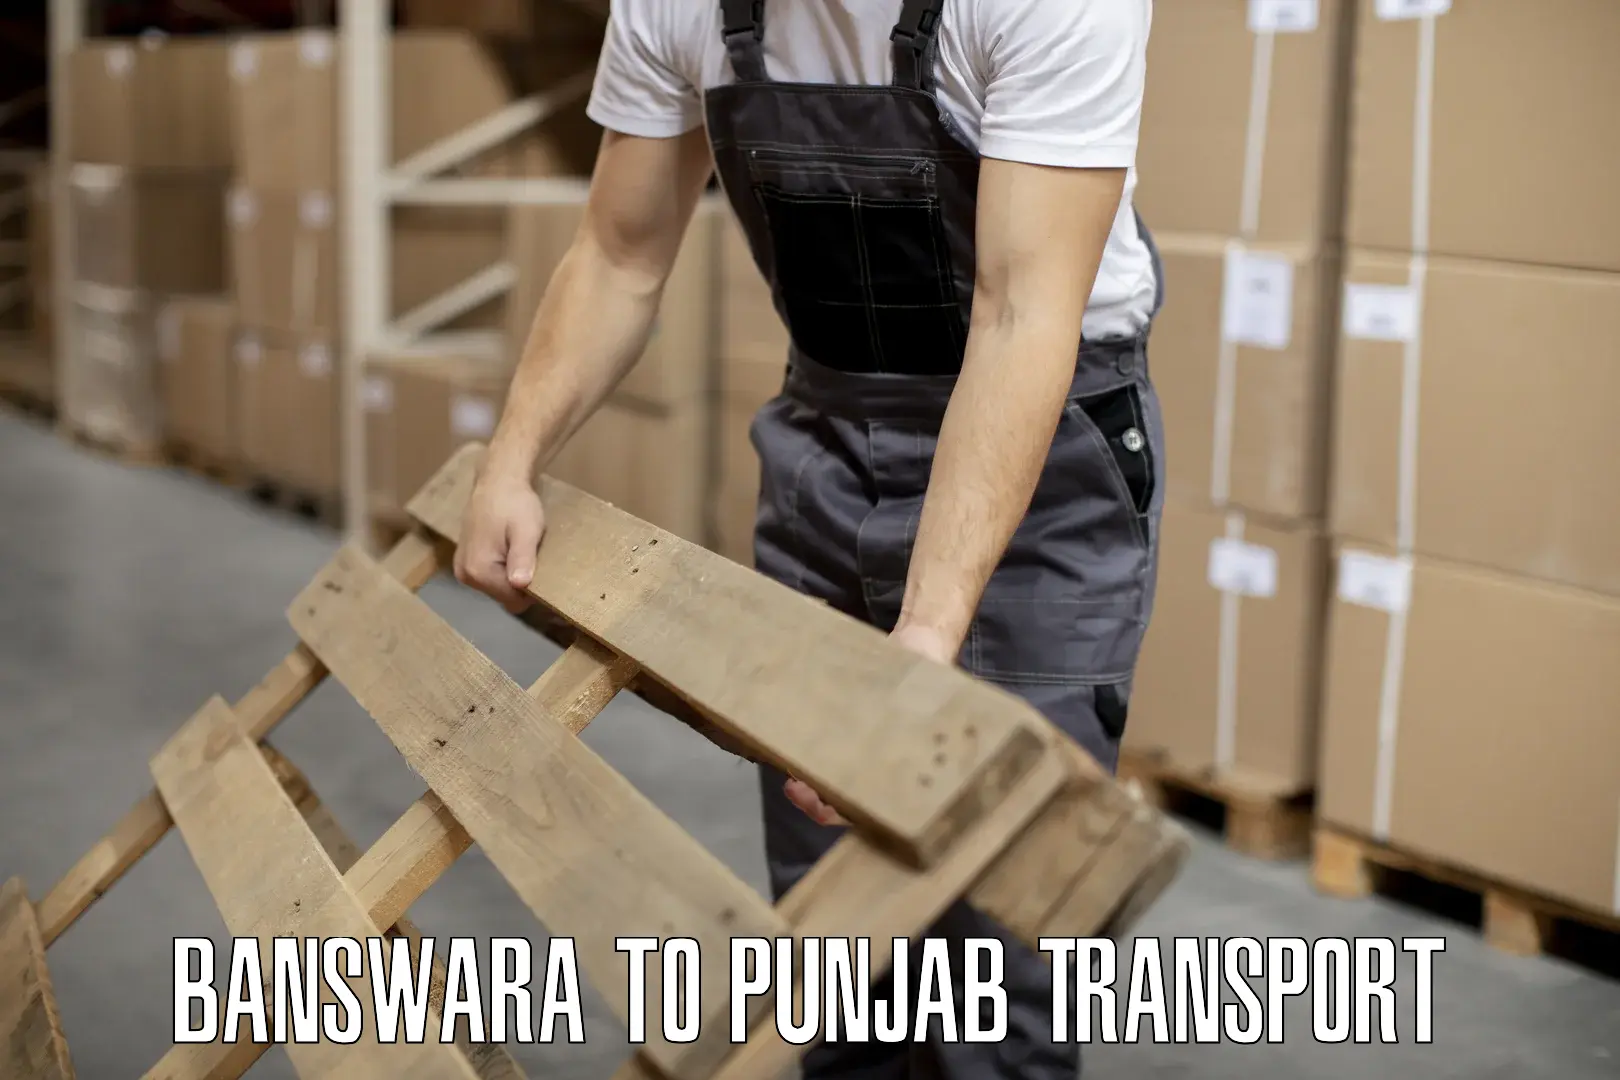 Furniture transport service Banswara to Mansa